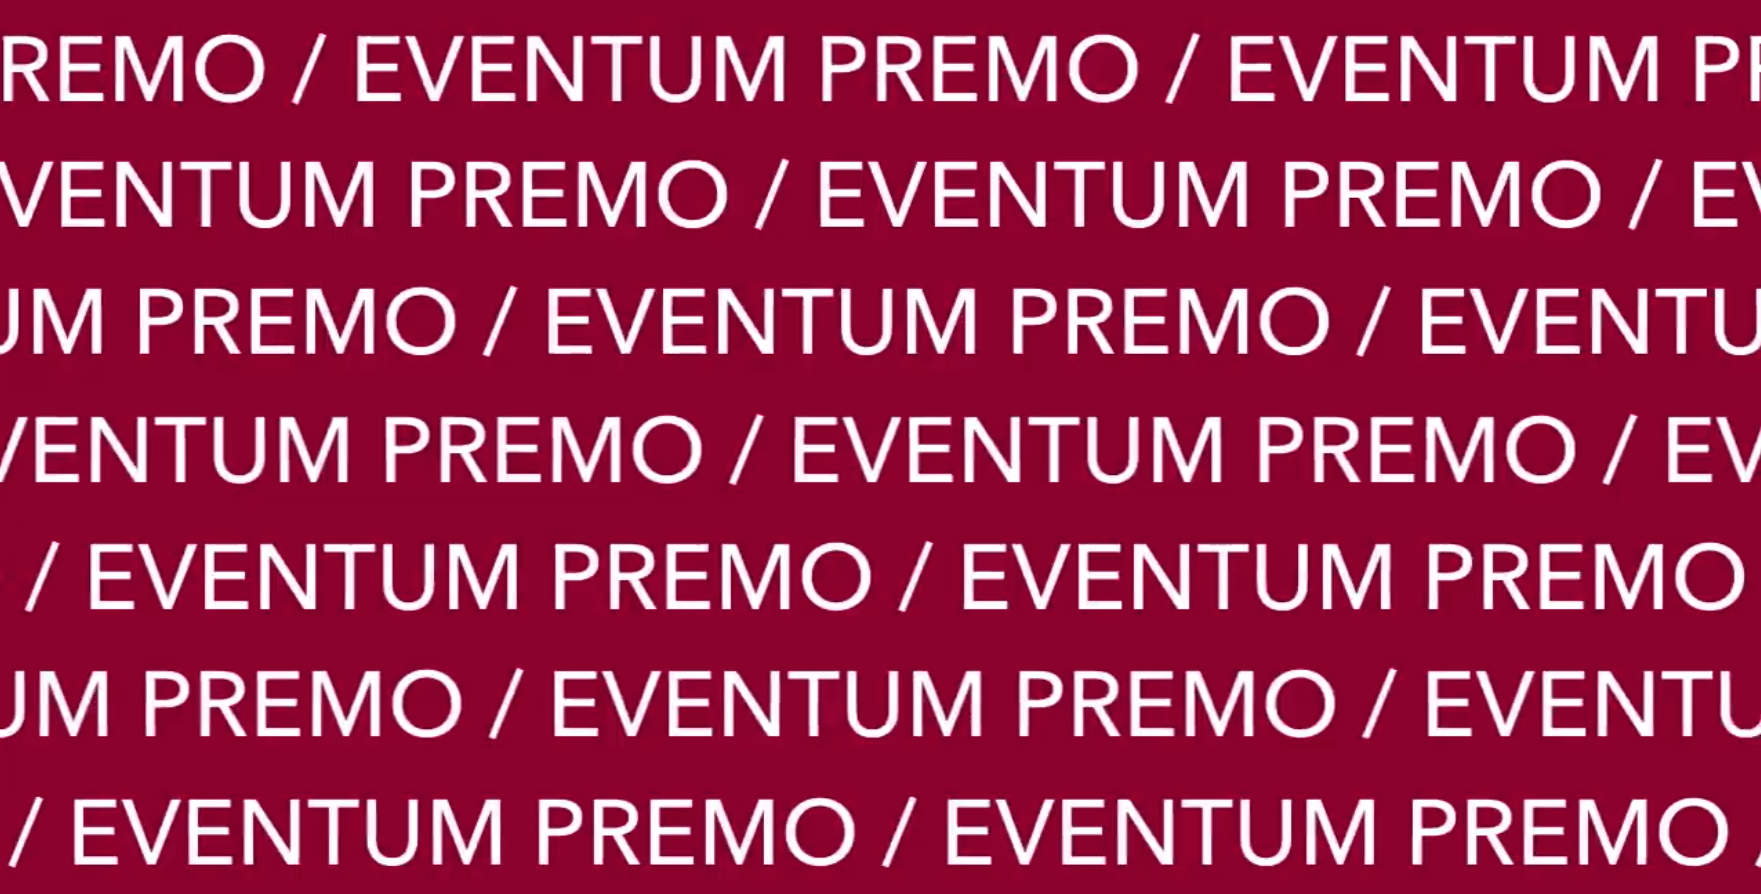 Eventum Premo логотип. Eventum Premo агентство. Как получить Eventum. Eventum premo